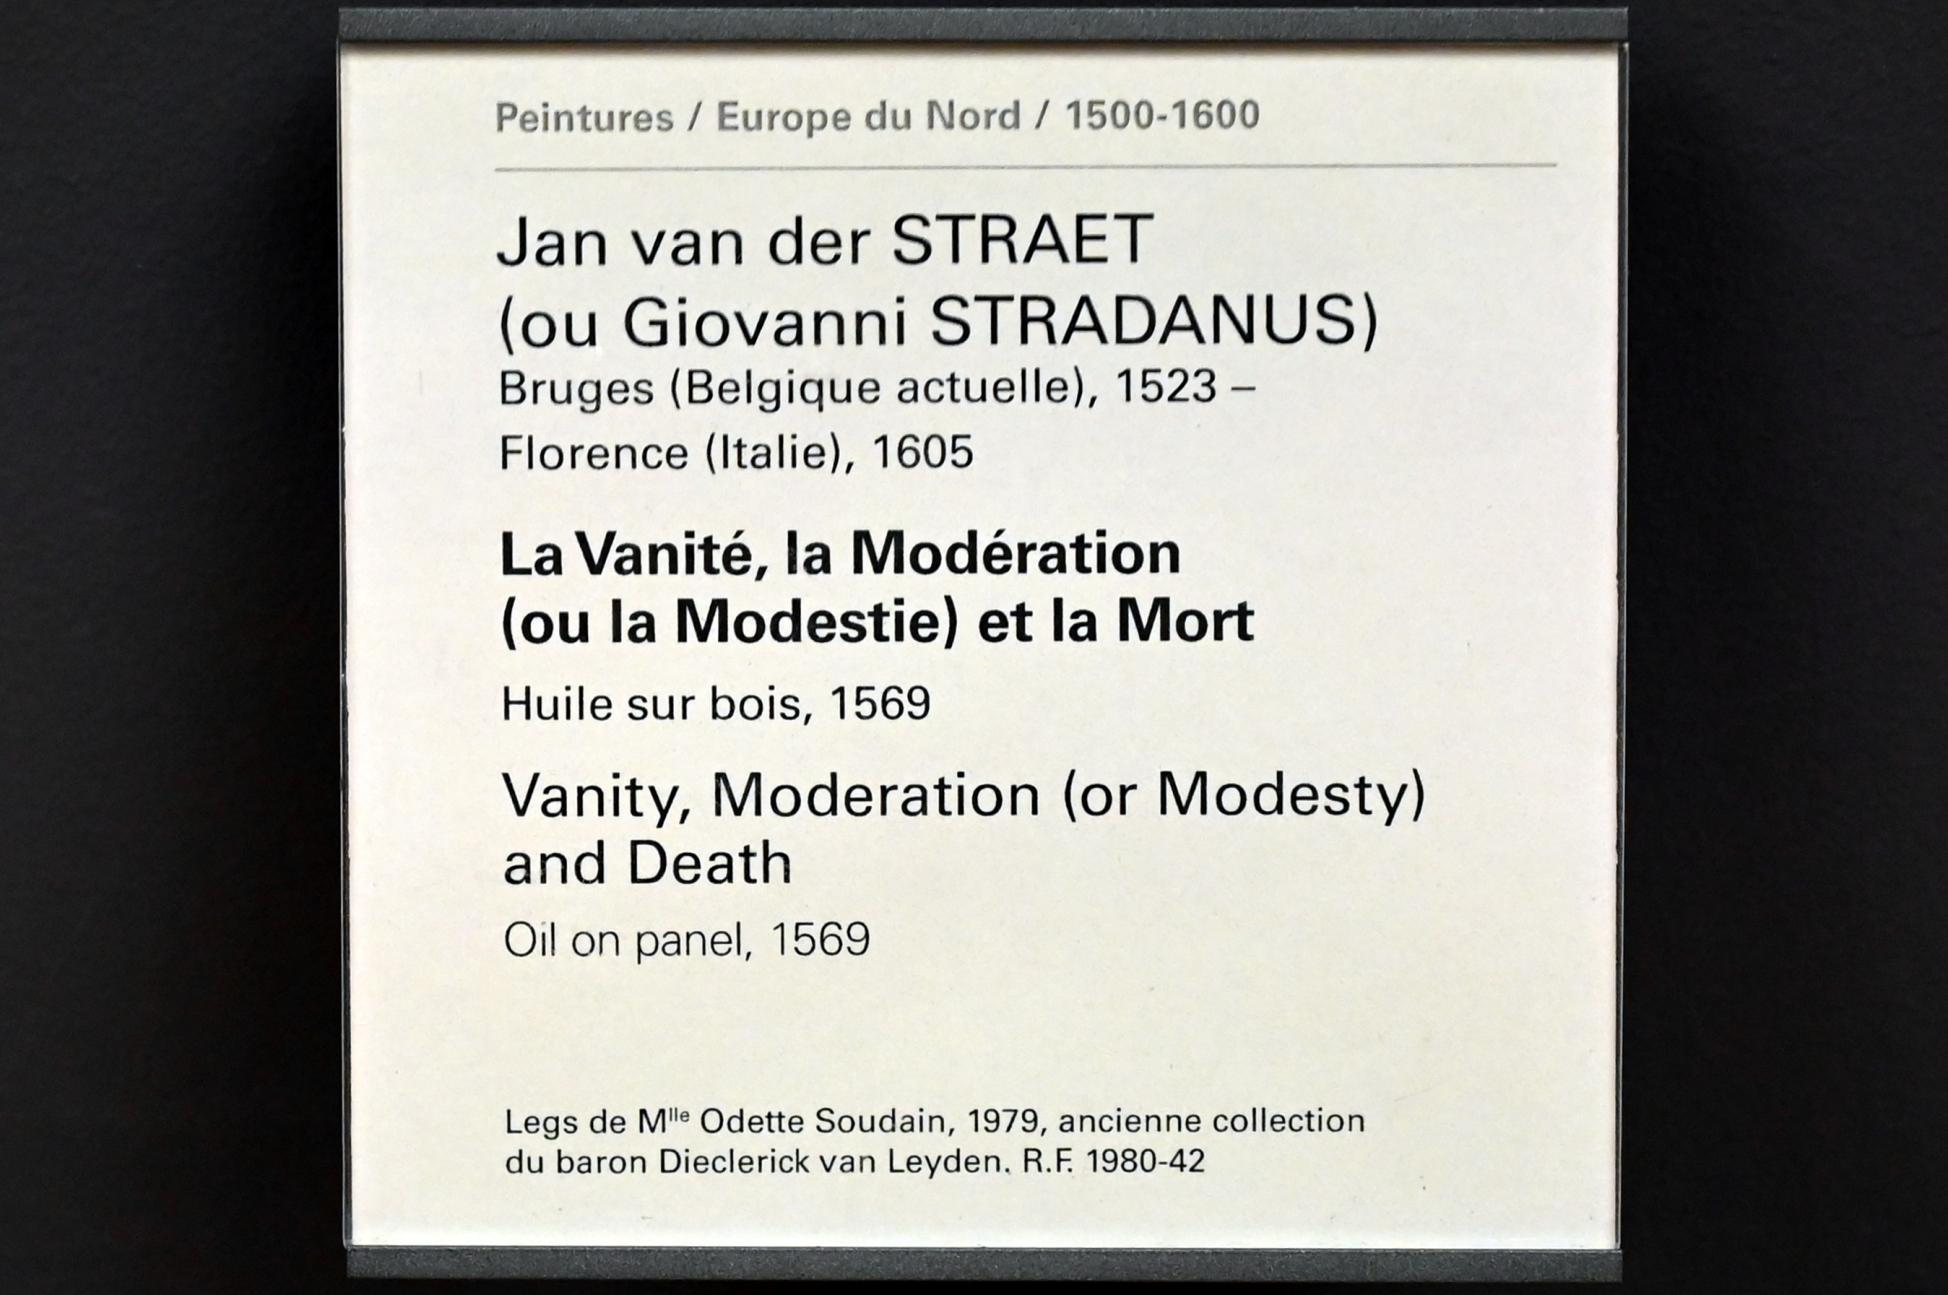 Jan van der Straet (Johannes Stradanus) (1569), Allegorien der Eitelkeit, der Mäßigung (oder der Bescheidenheit) und des Todes, Paris, Musée du Louvre, Saal 811, 1569, Bild 2/2